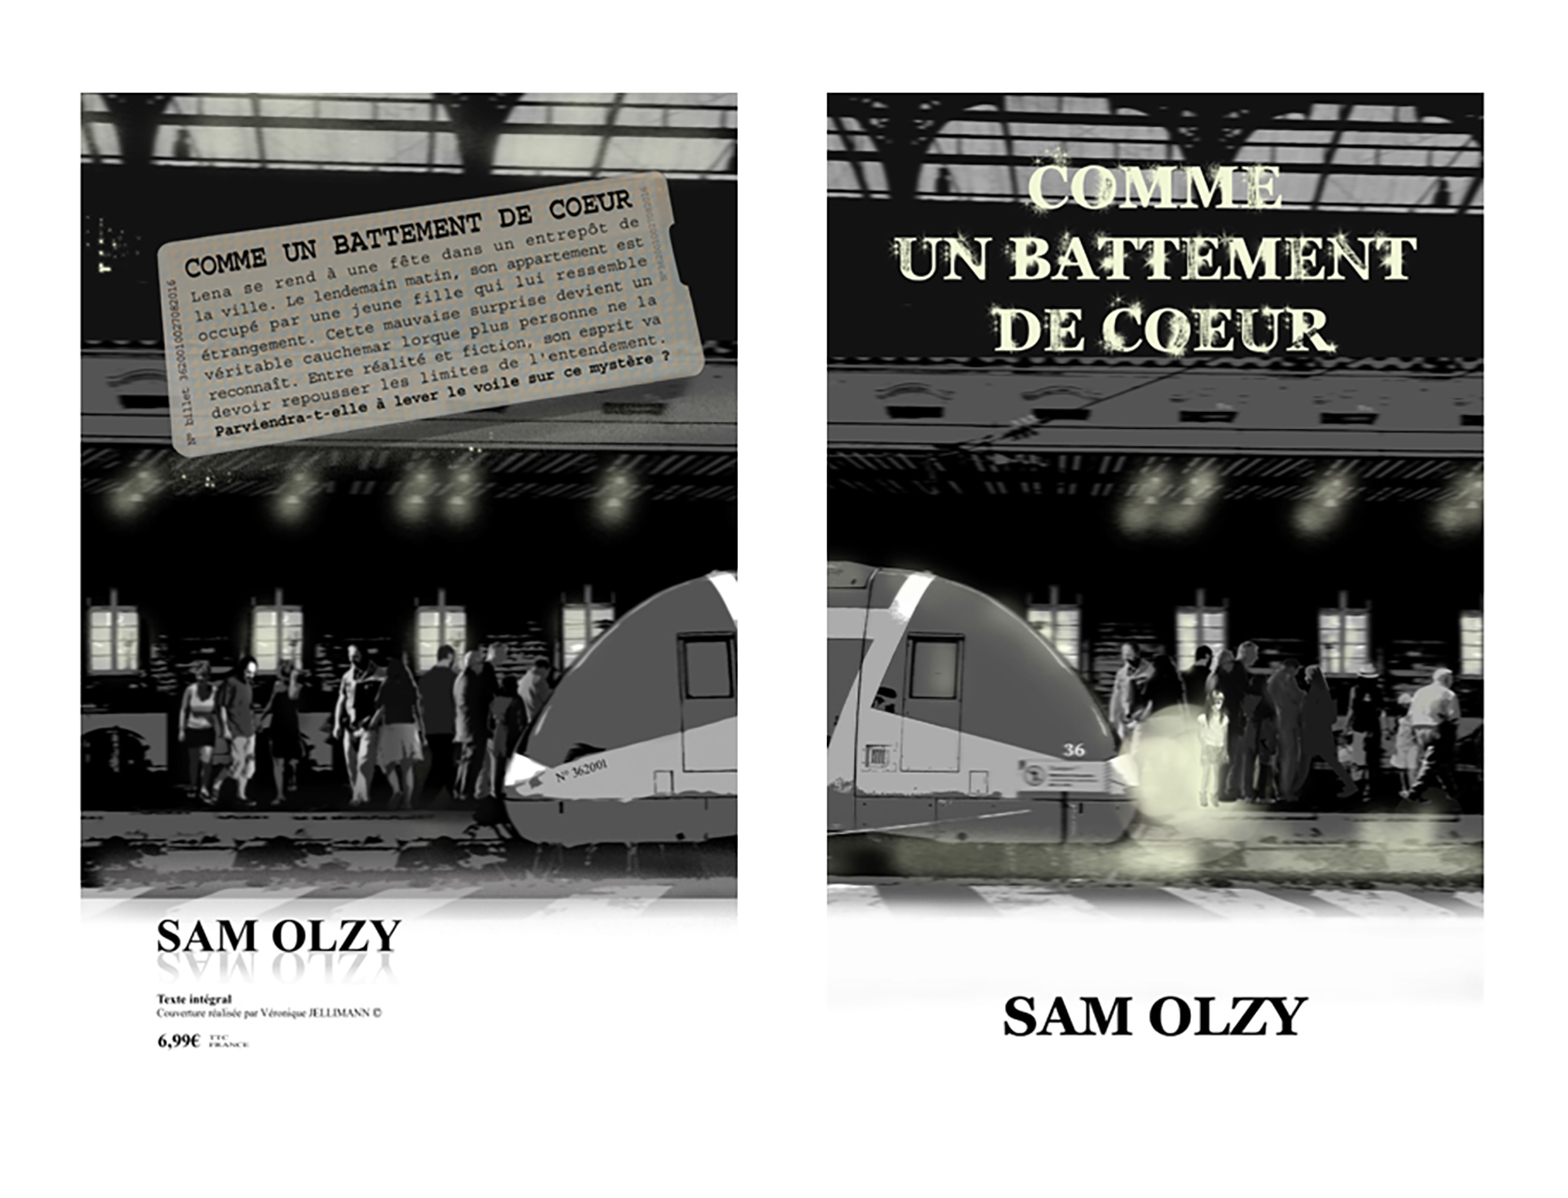 Couverture de livre - Sam Olzy